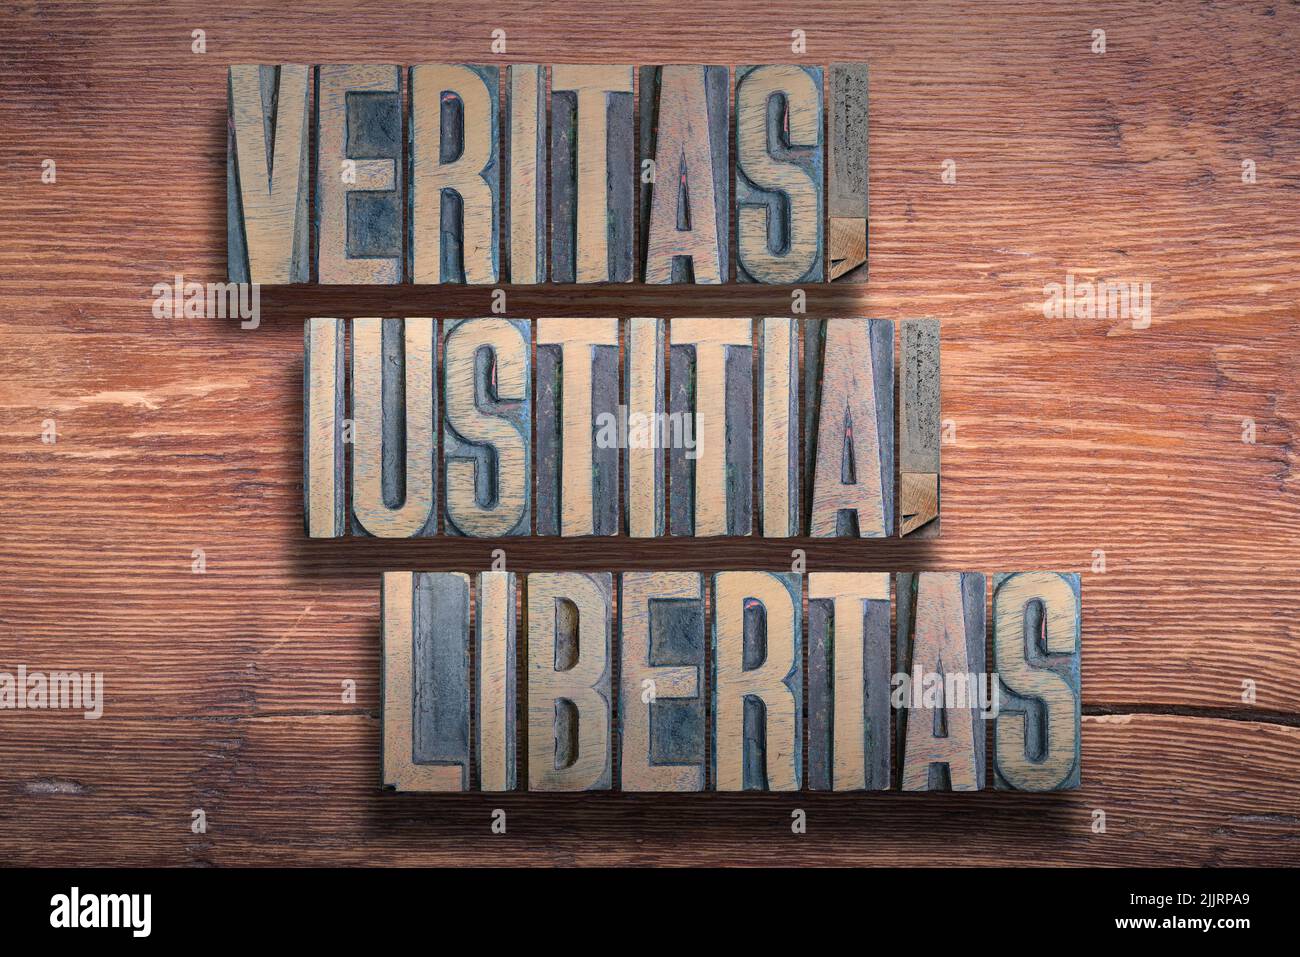 veritas, iustitia, libertas Antiguo latín diciendo significado - verdad, justicia, libertad, combinado en la vendimia barnizada superficie de madera Foto de stock